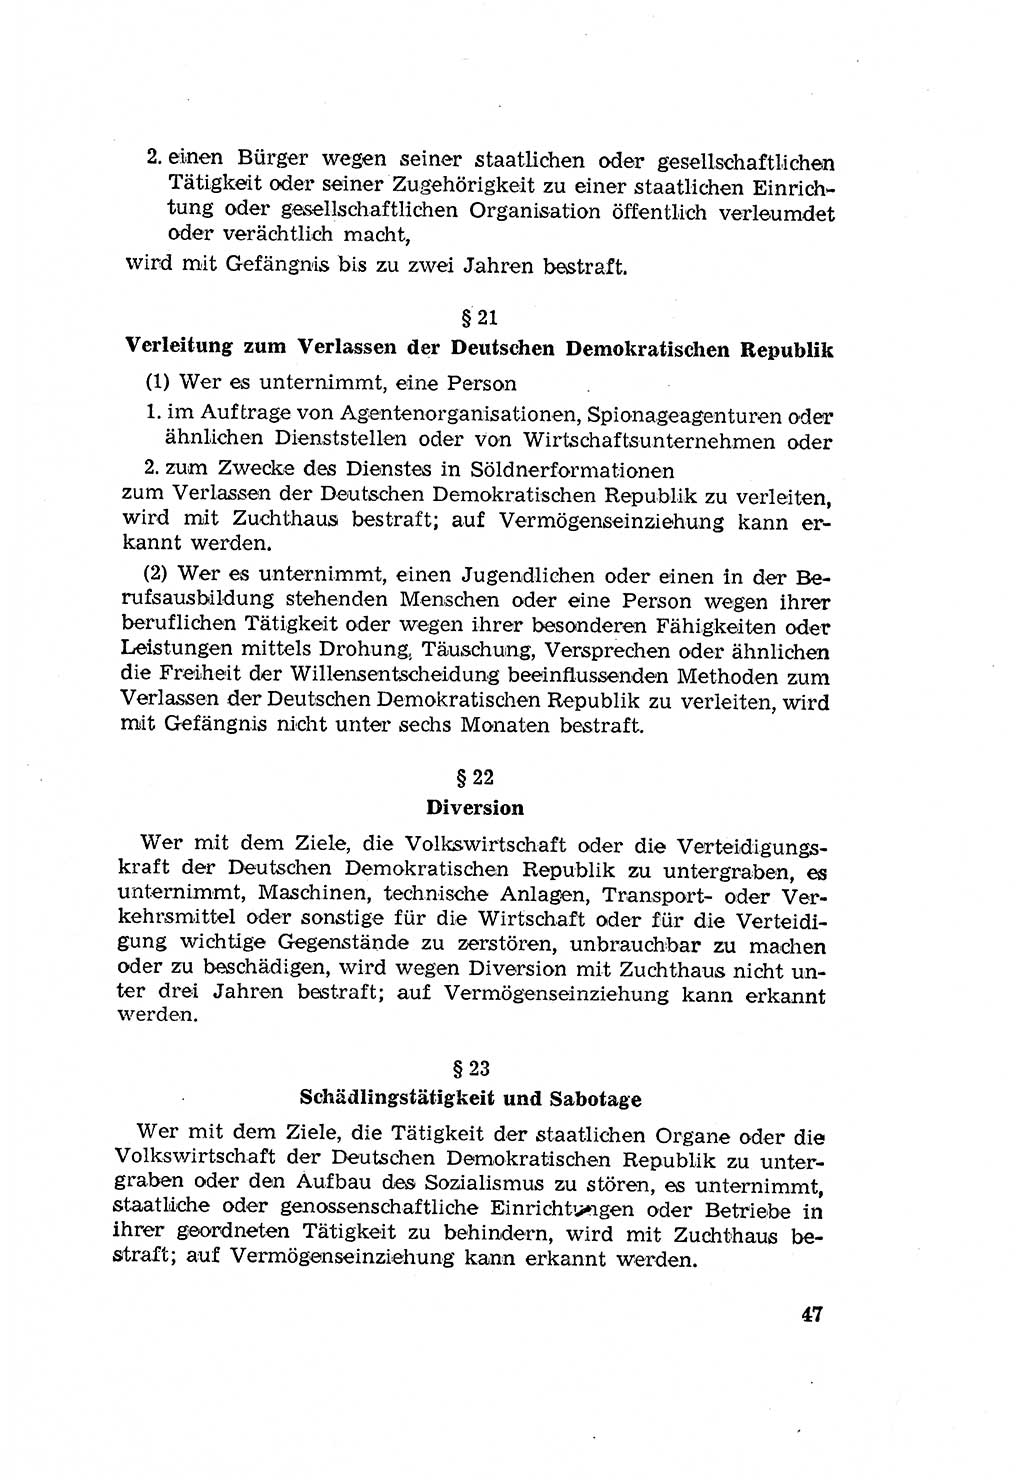 Zum Erlaß des Gesetzes zur Ergänzung des Strafgesetzbuches (StGB), Strafergänzungsgesetz (StEG) [Deutsche Demokratische Republik (DDR)] 1957, Seite 47 (StGB StEG DDR 1957, S. 47)